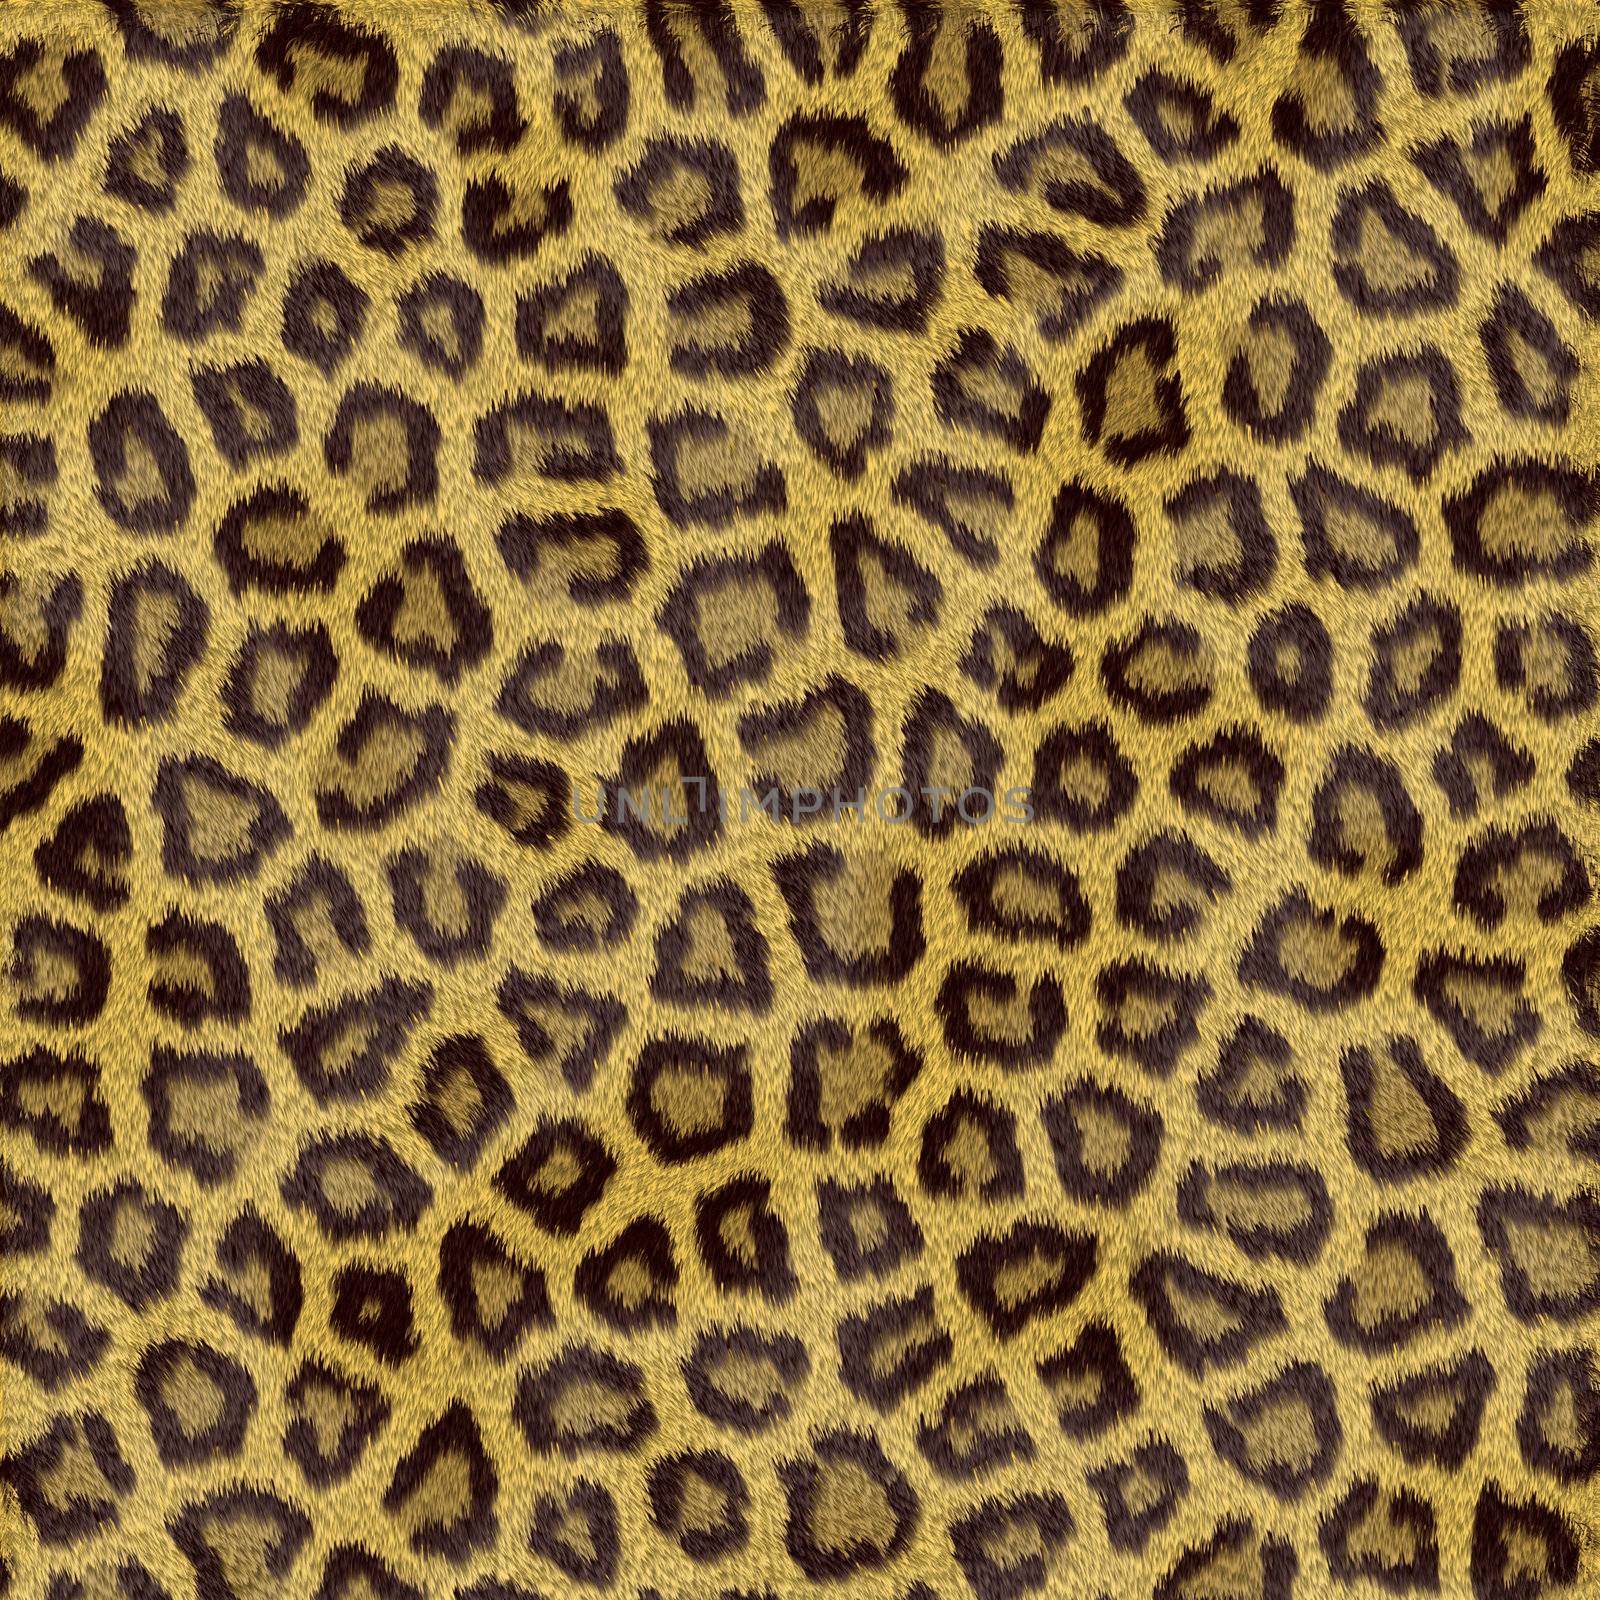 Leopard Fur by Georgios